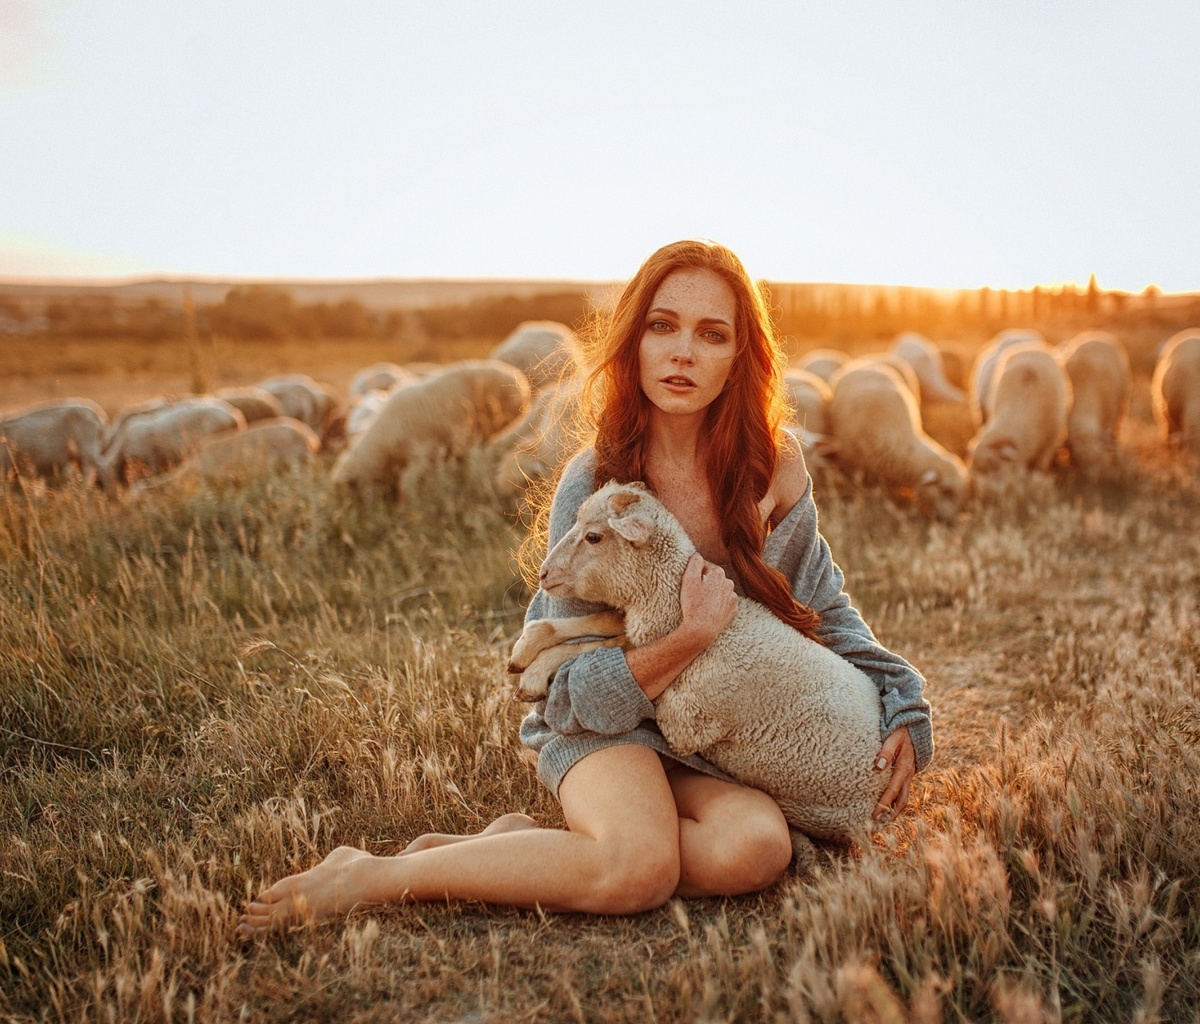 Обои Girl with Sheep 1200x1024